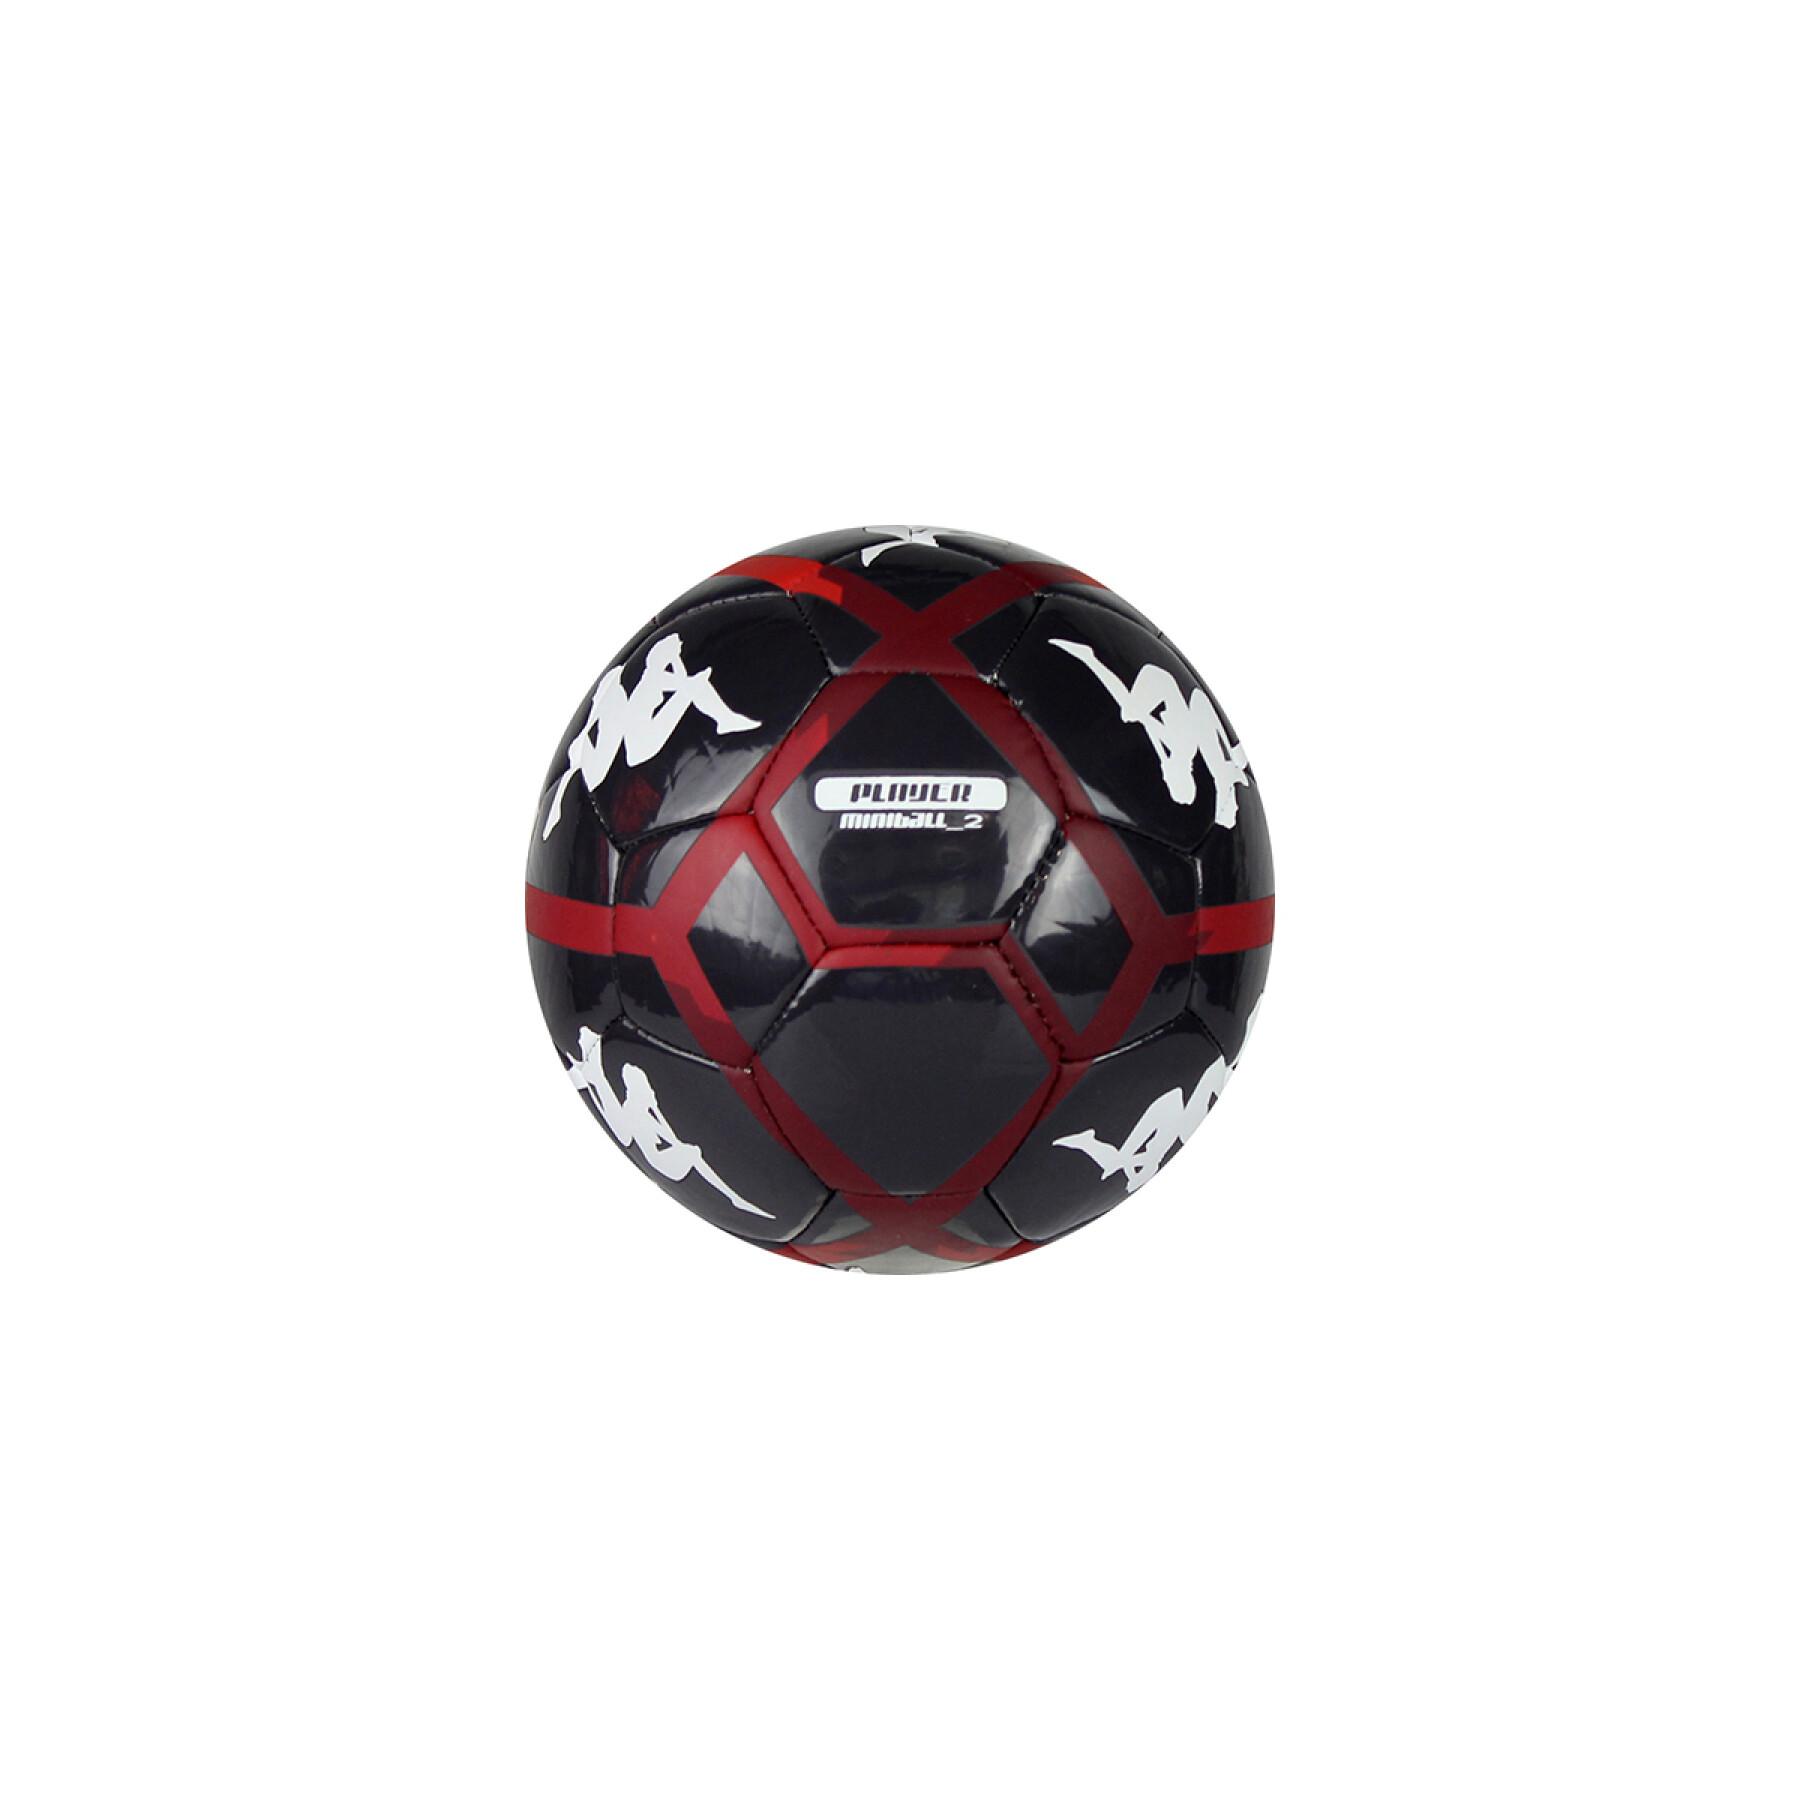 Mini palla AS Monaco 2021/22 player